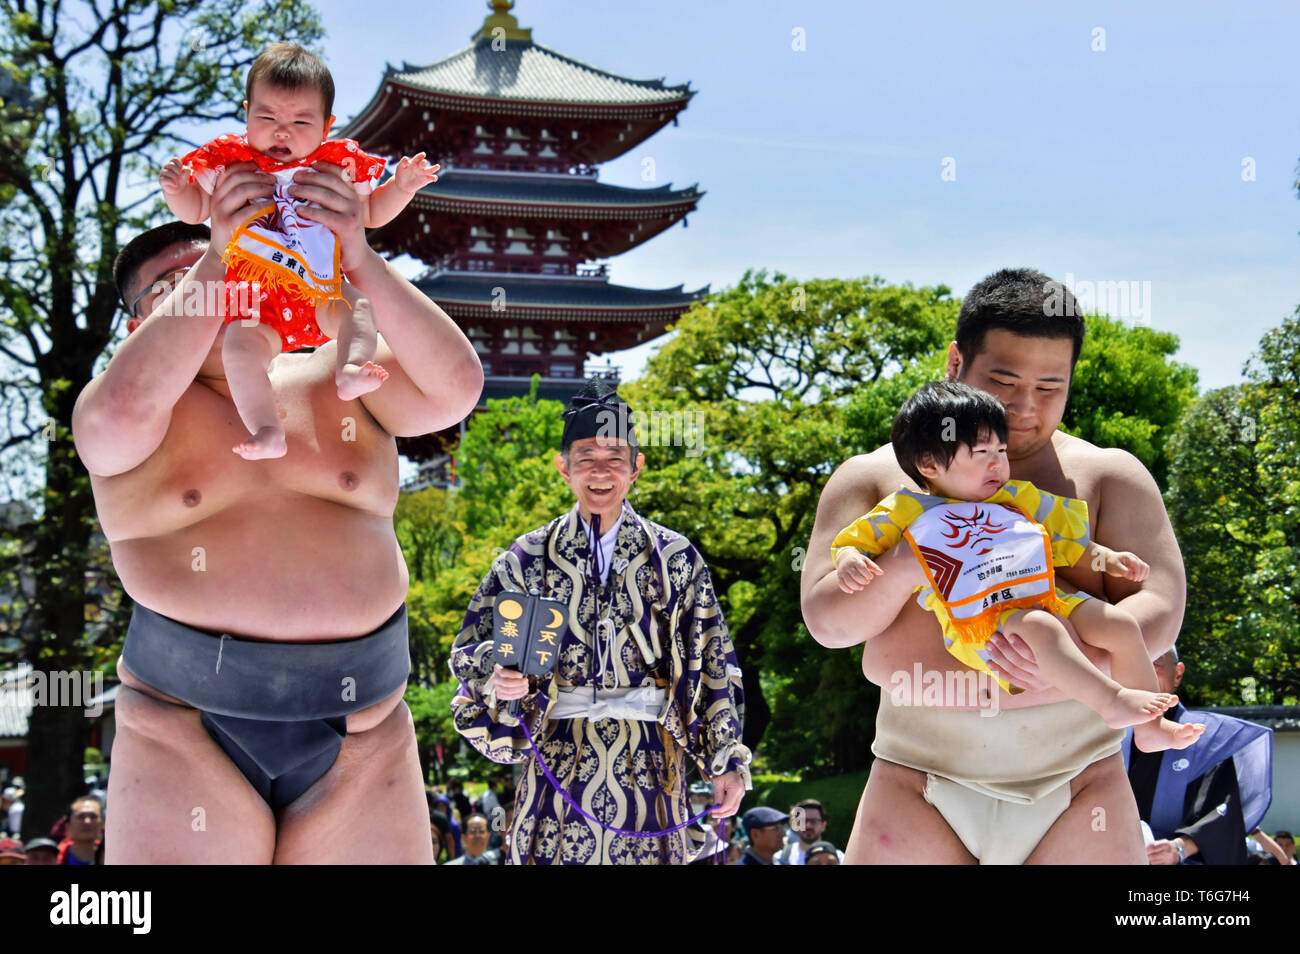 Japon : le festival des bébés sumos en pleurs fait son grand retour